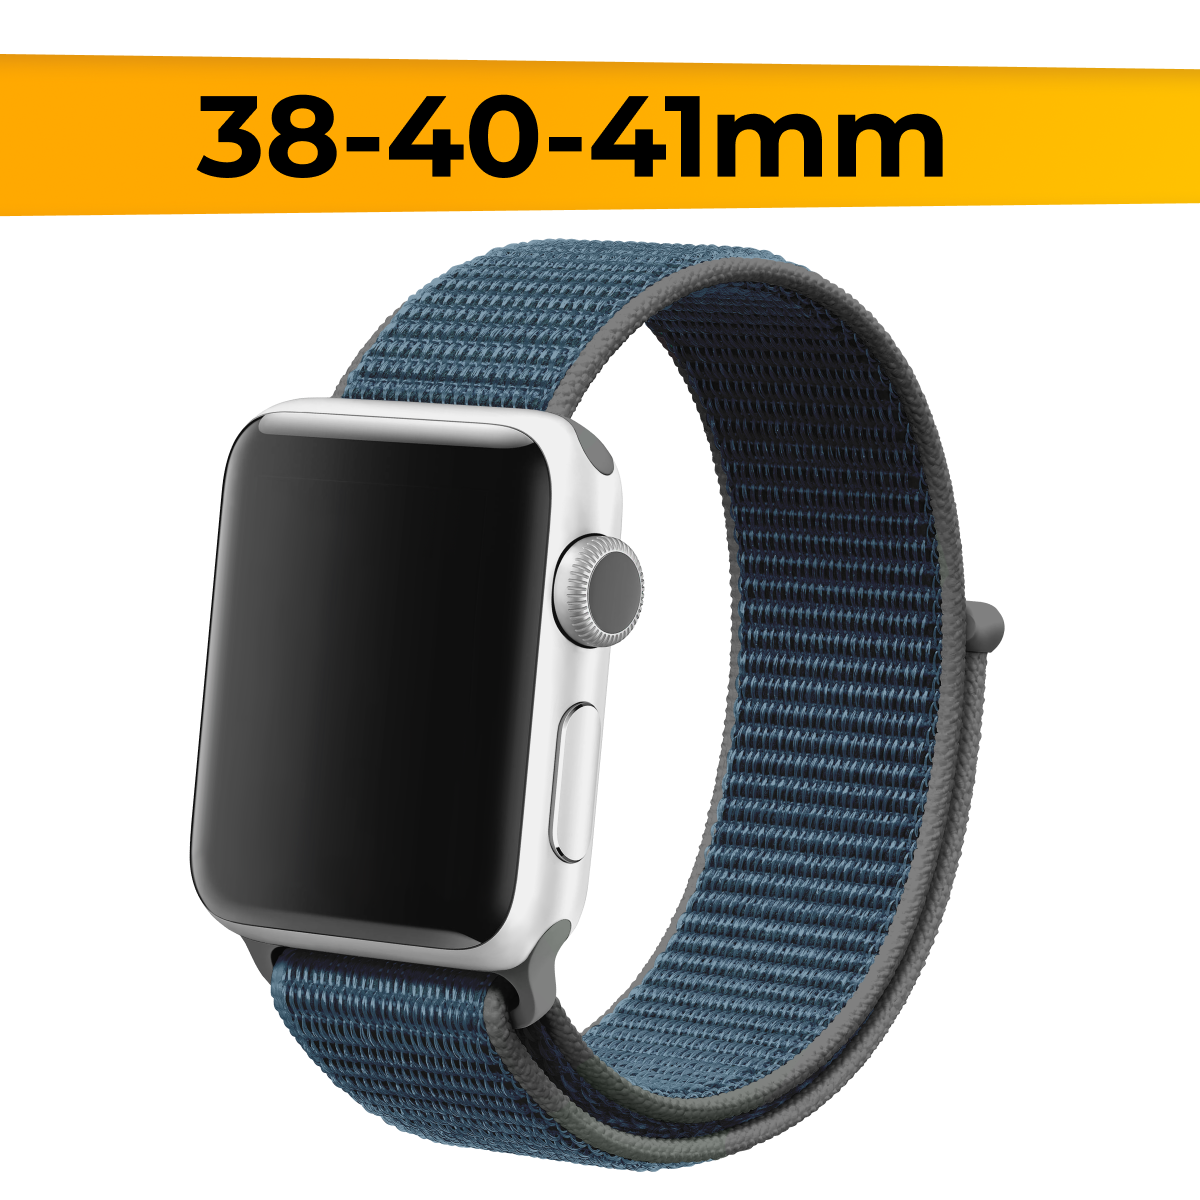 Нейлоновый ремешок для смарт часов Apple Watch 38-40-41mm / Эластичный браслет для Эпл Вотч 1-9 и SE / Сменный тканевый ремешок / Черно-синий